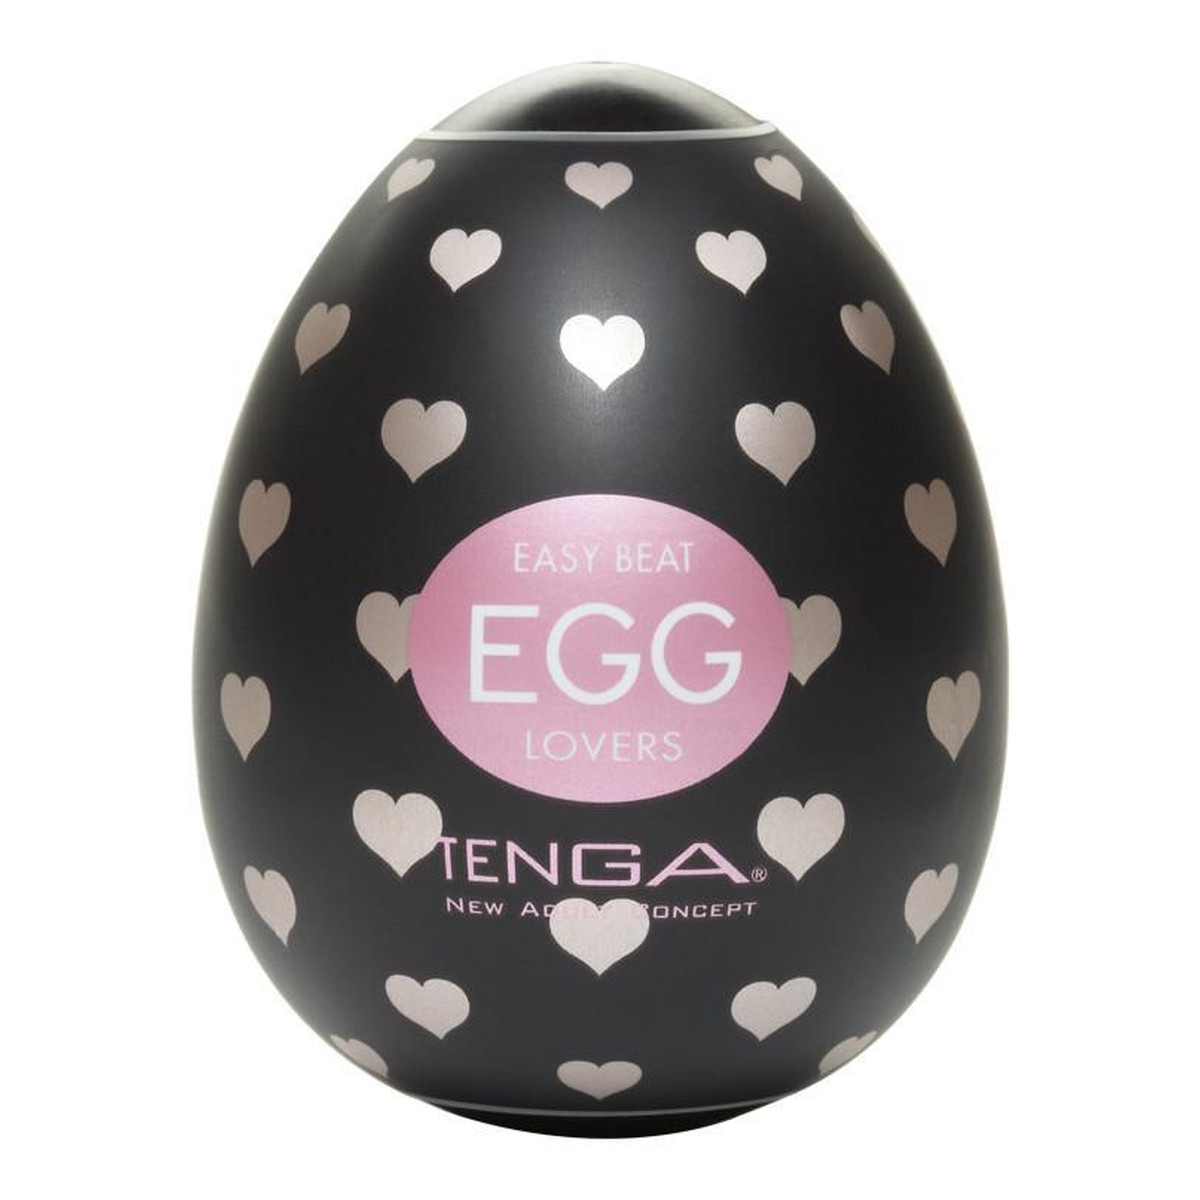 Tenga Easy beat egg lovers jednorazowy masturbator w kształcie jajka